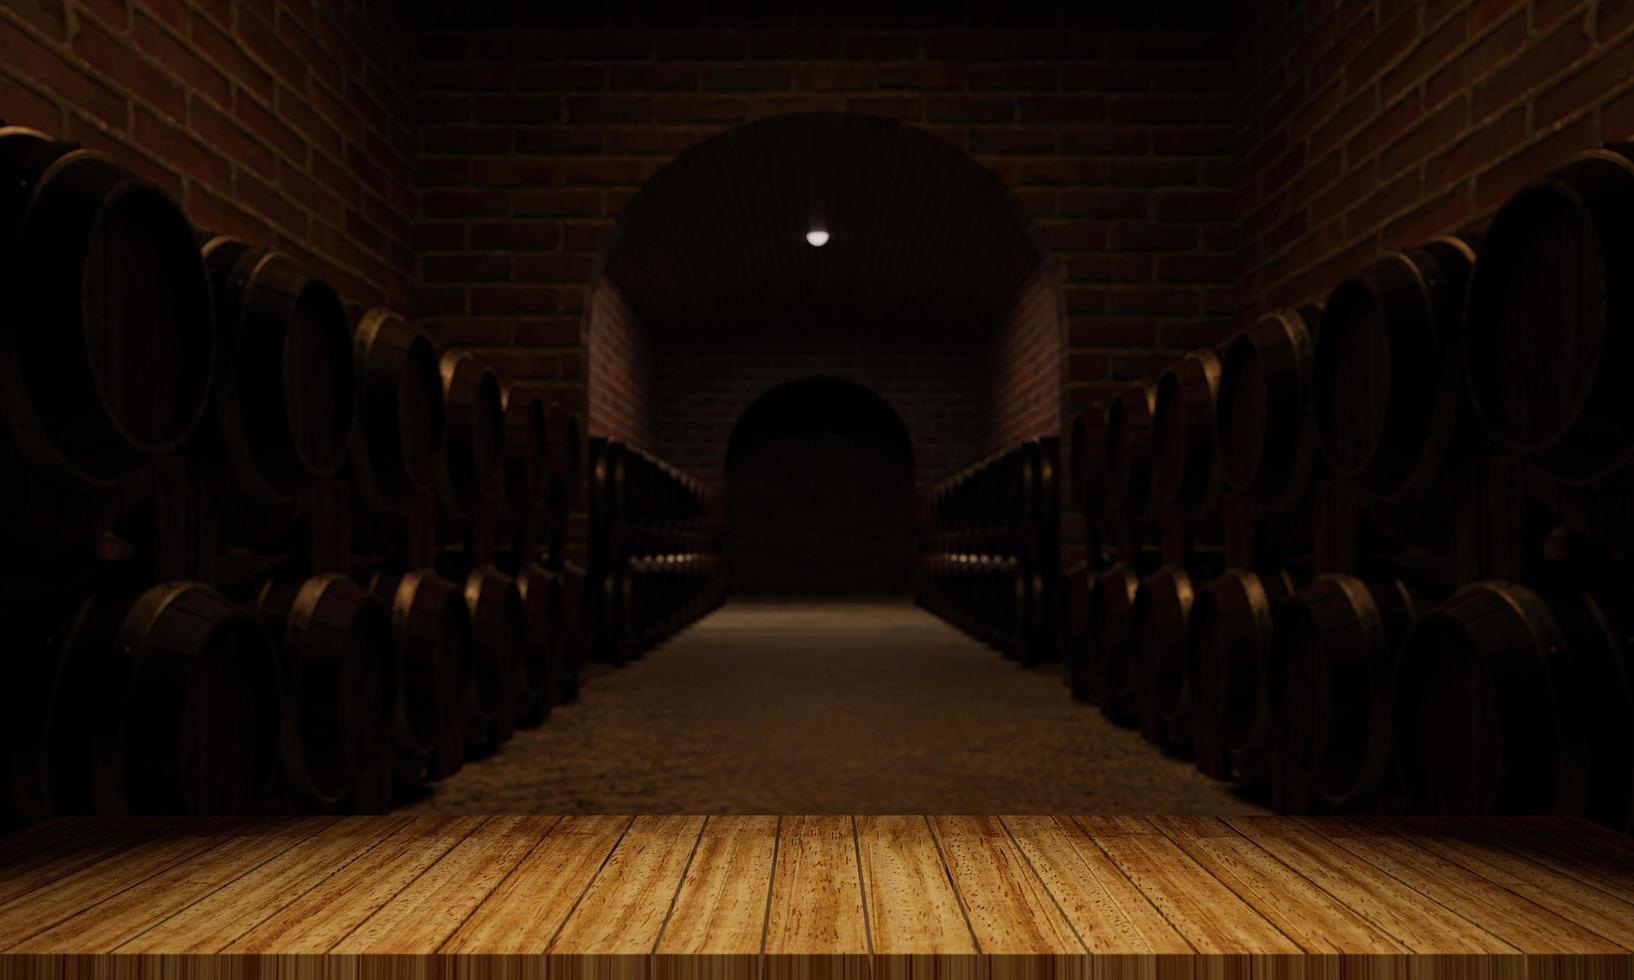 Holzfässer für die Weingärung. Raum für die Lagerung mehrerer Weingärtanks. Die Backsteinmauer ist rot-orange. 3D-Rendering foto